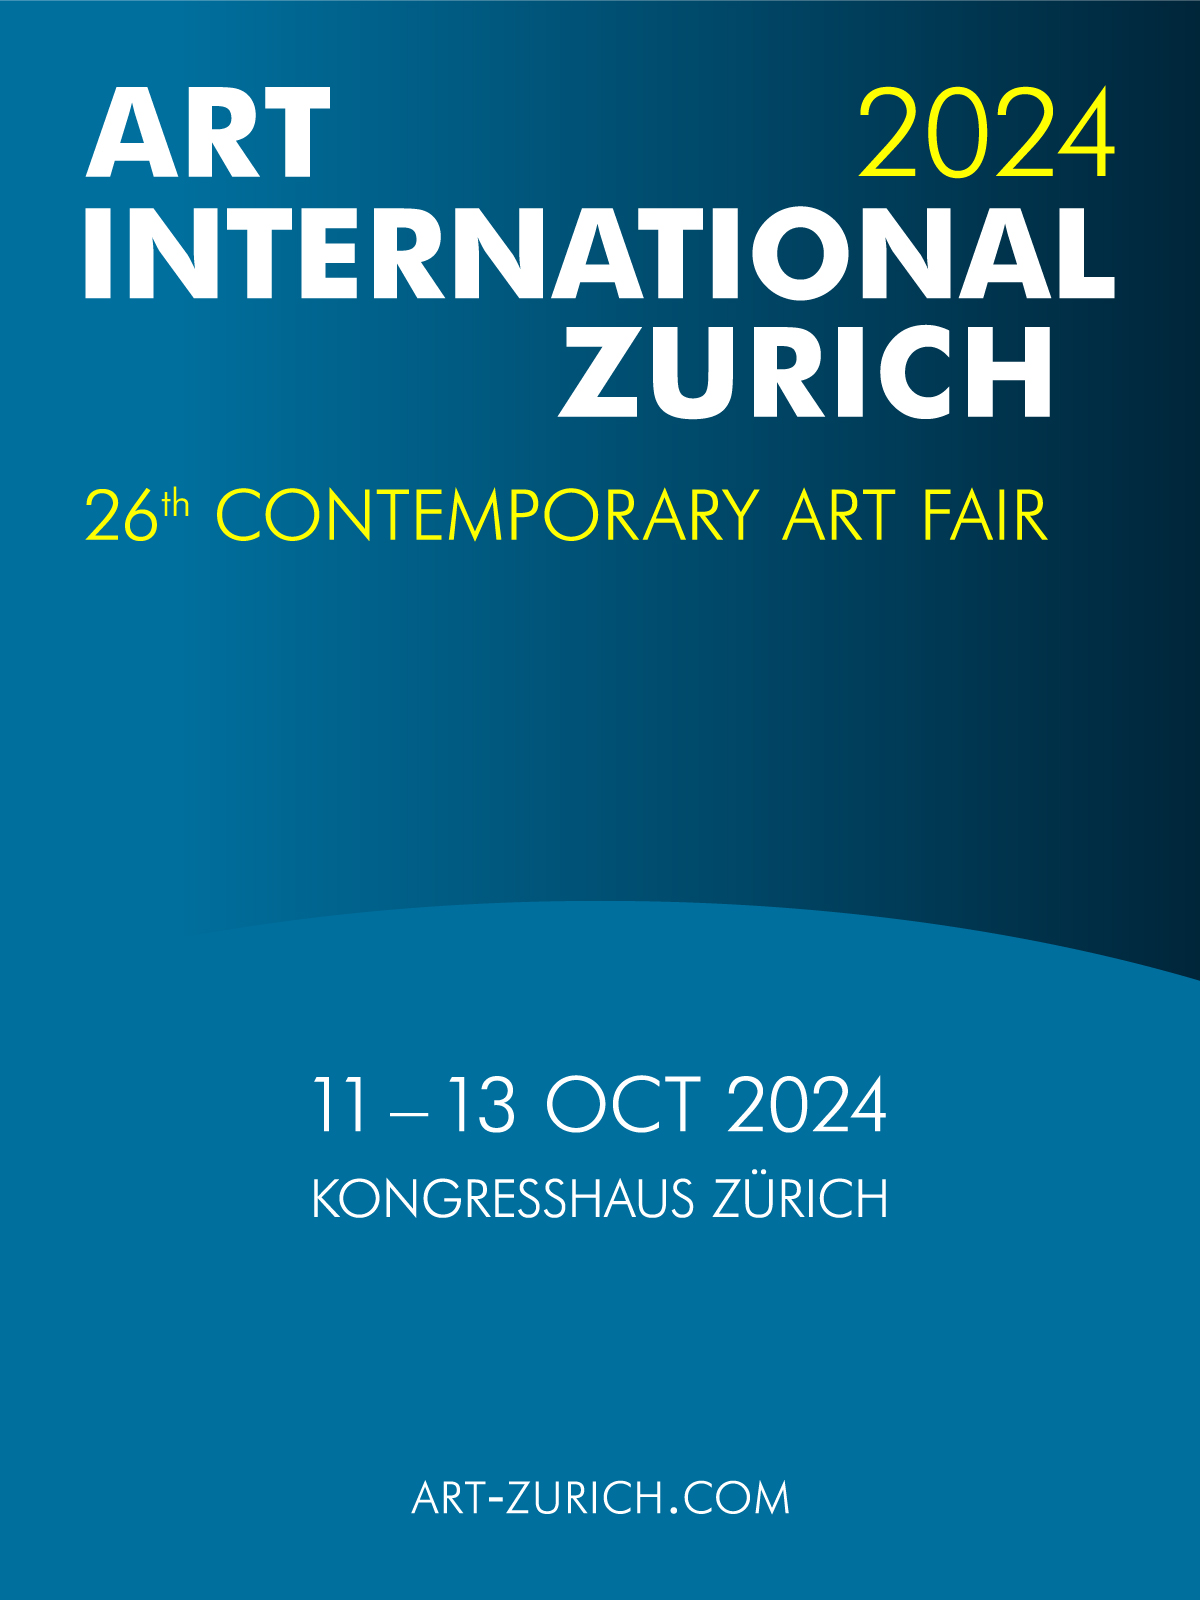 ART INTERNATIONAL ZURICH 2024